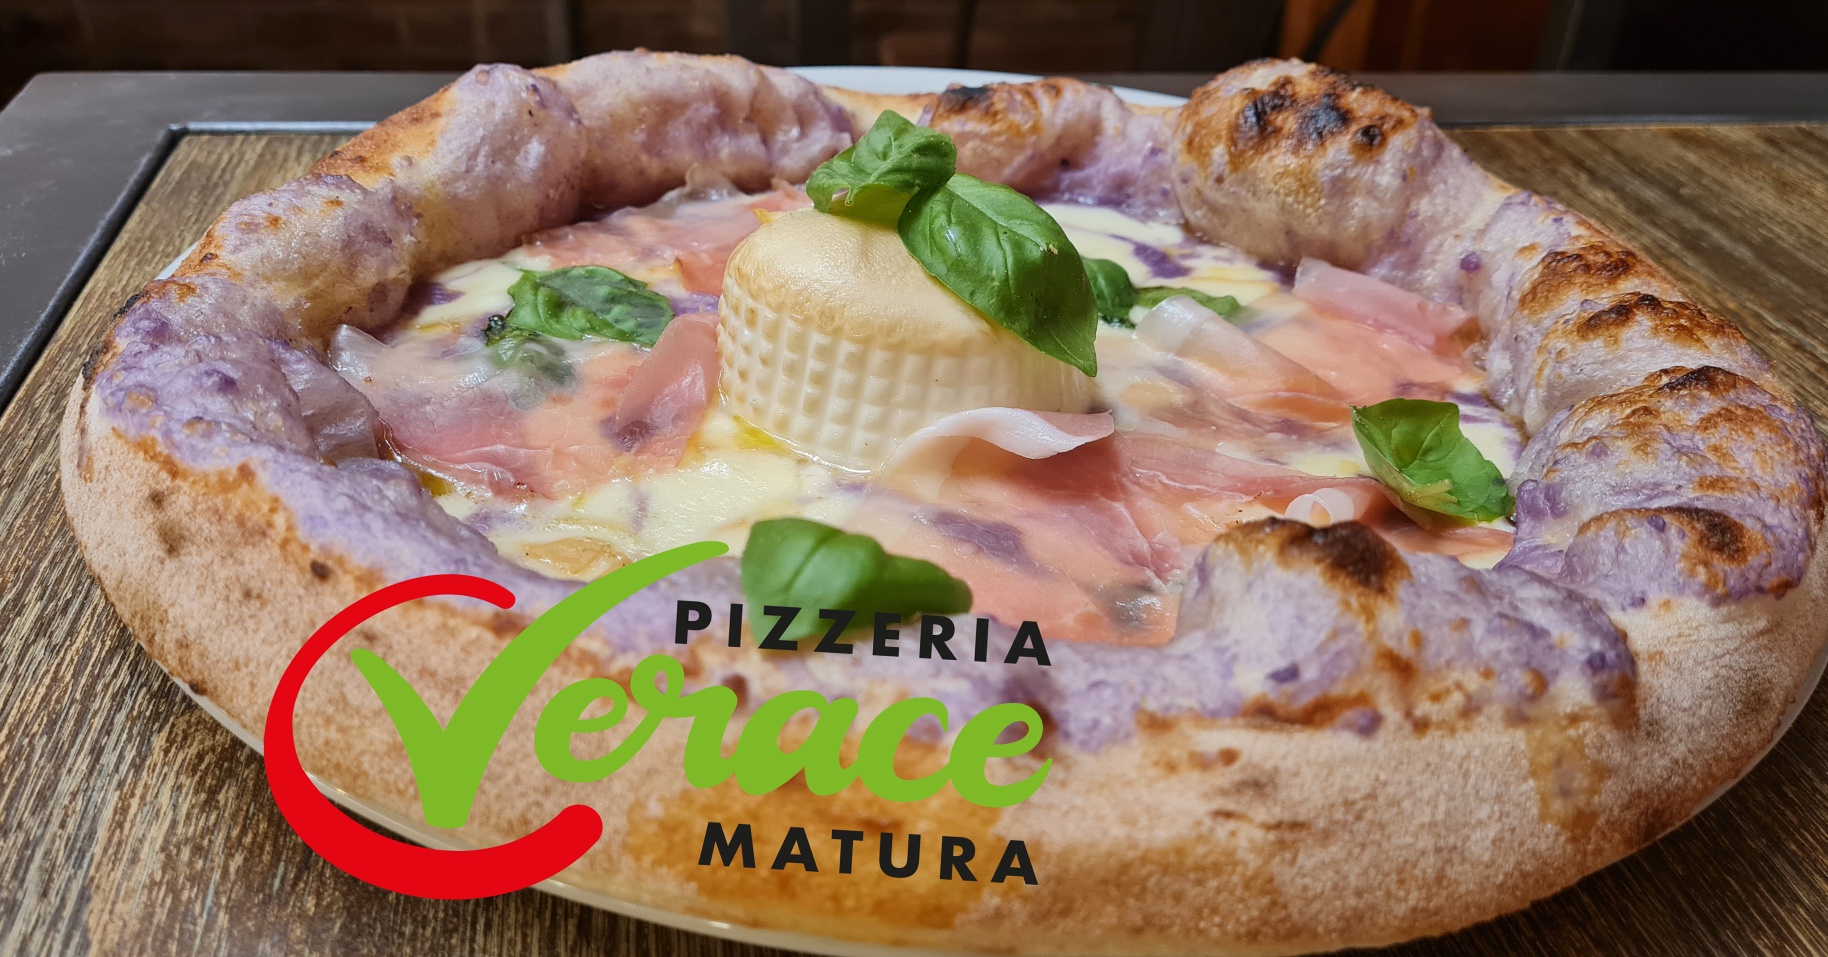 Pizzeria Verace Matura, Sestri Levante (GE)